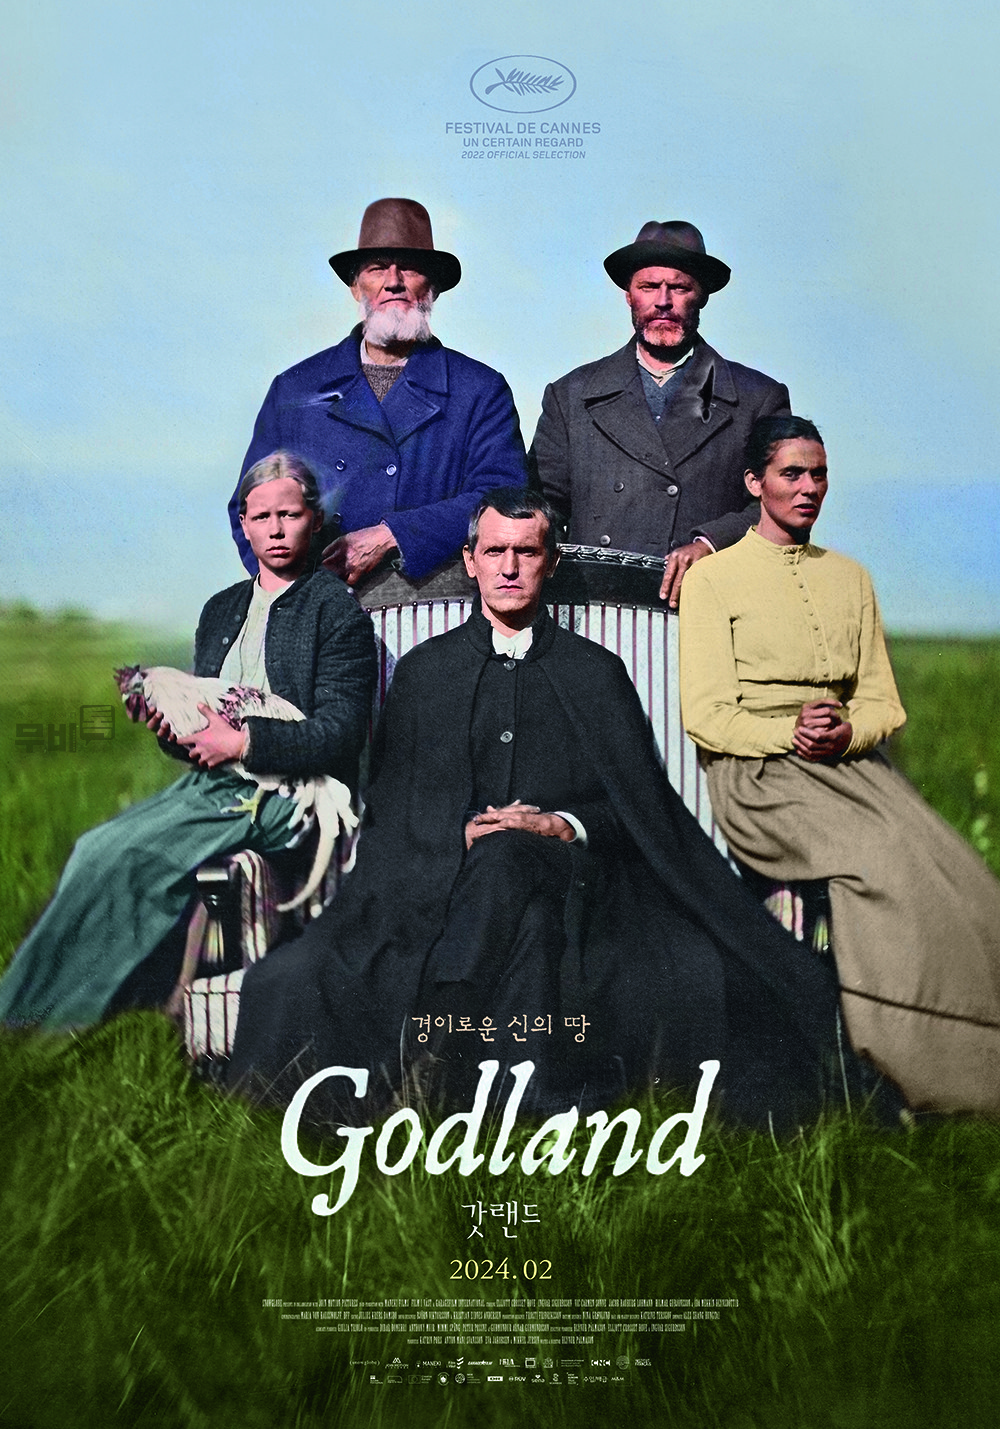 포스터= ‘갓랜드’ Godland(영어), Vanskabte Land(덴마크어), Volaða Land(아이슬란드어)